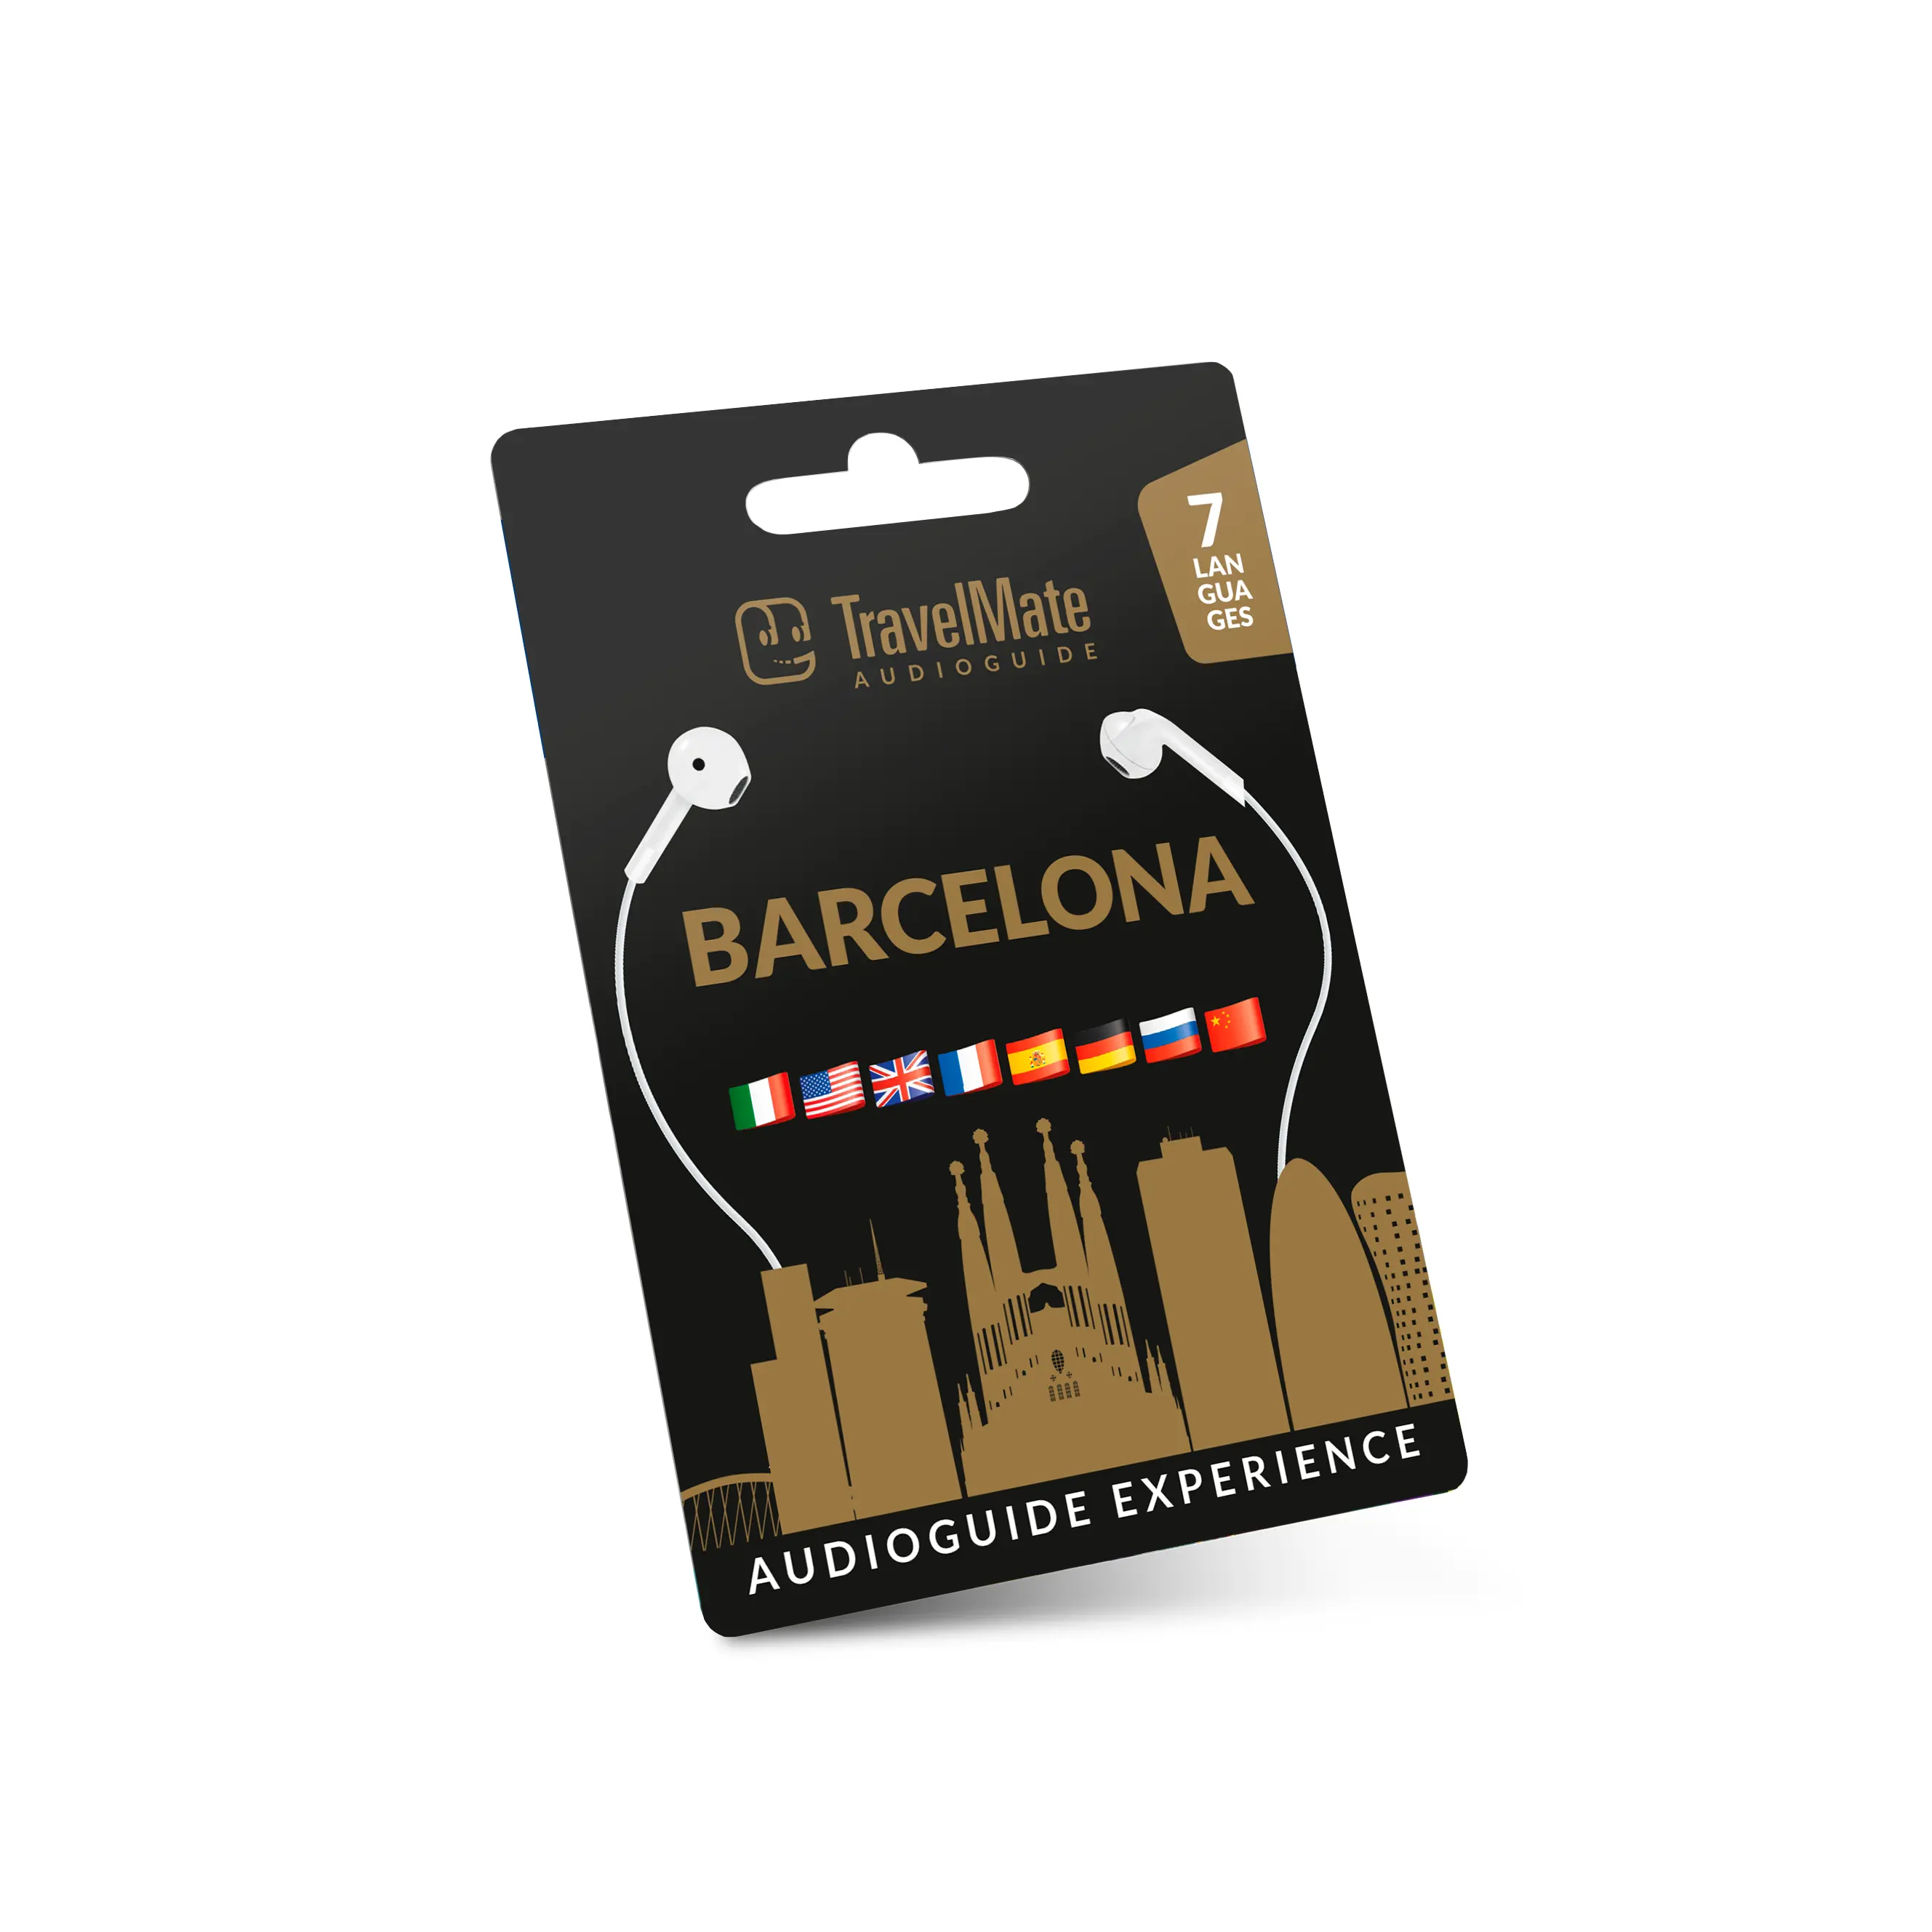 Las soluciones de guía turística de Barcelona más vendidas con 52 contenidos de audio, incluida la guía Camp Nou para el operador turístico